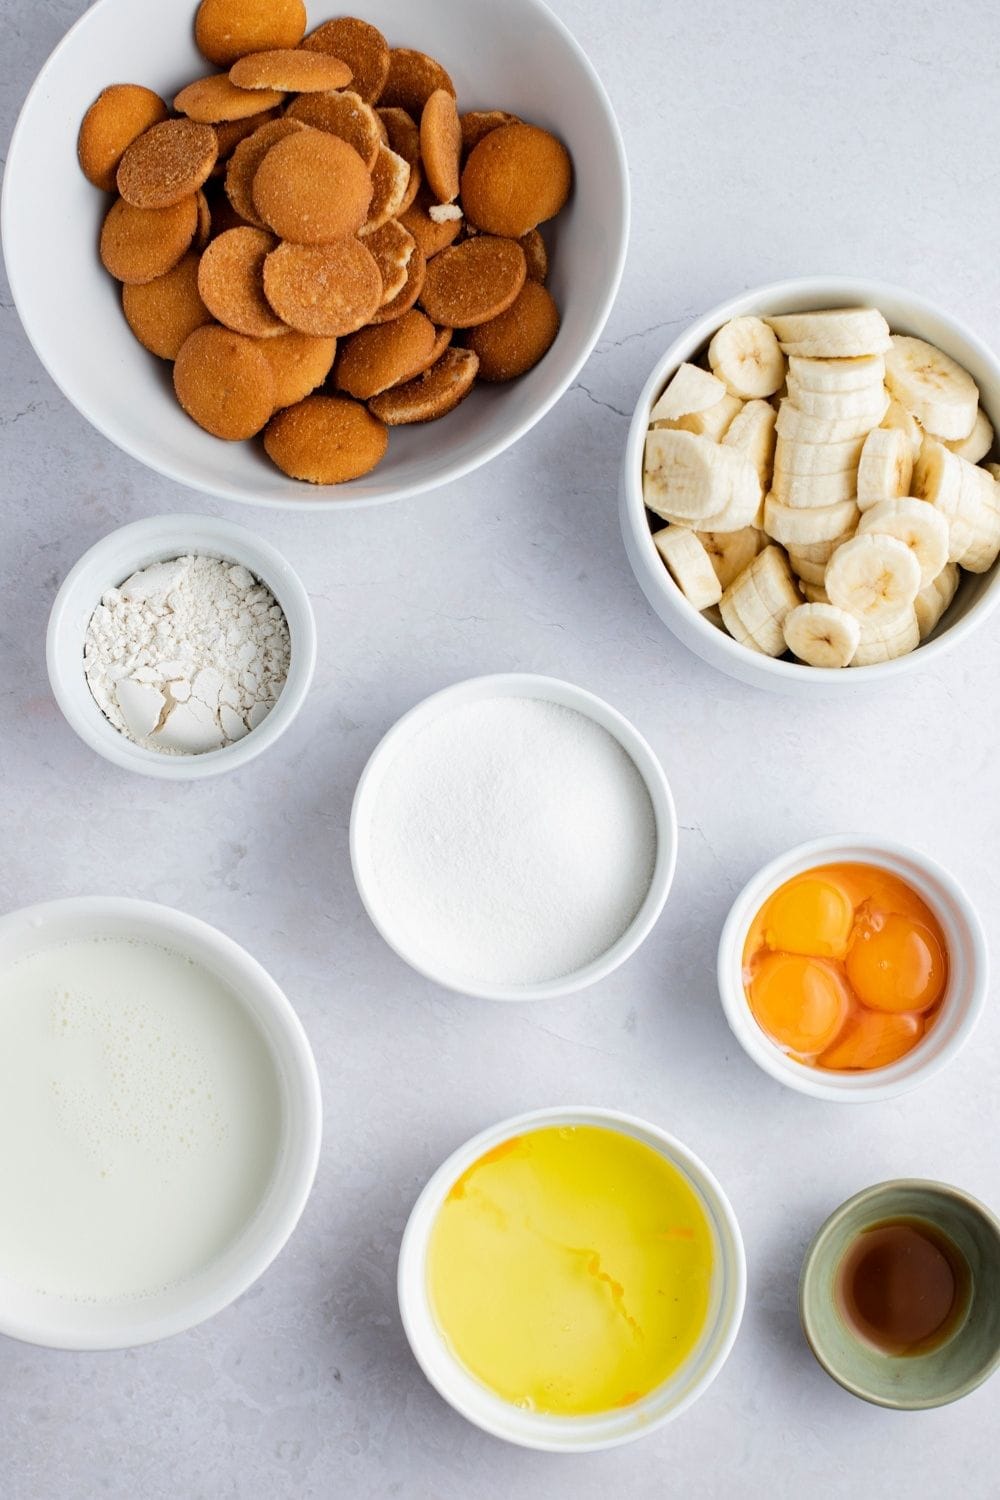 Nilla Wafers Banana Pudding Ingredients: Bananas, Milk, Sugar, All-Purpose Flour, Eggs and Nilla Wafers